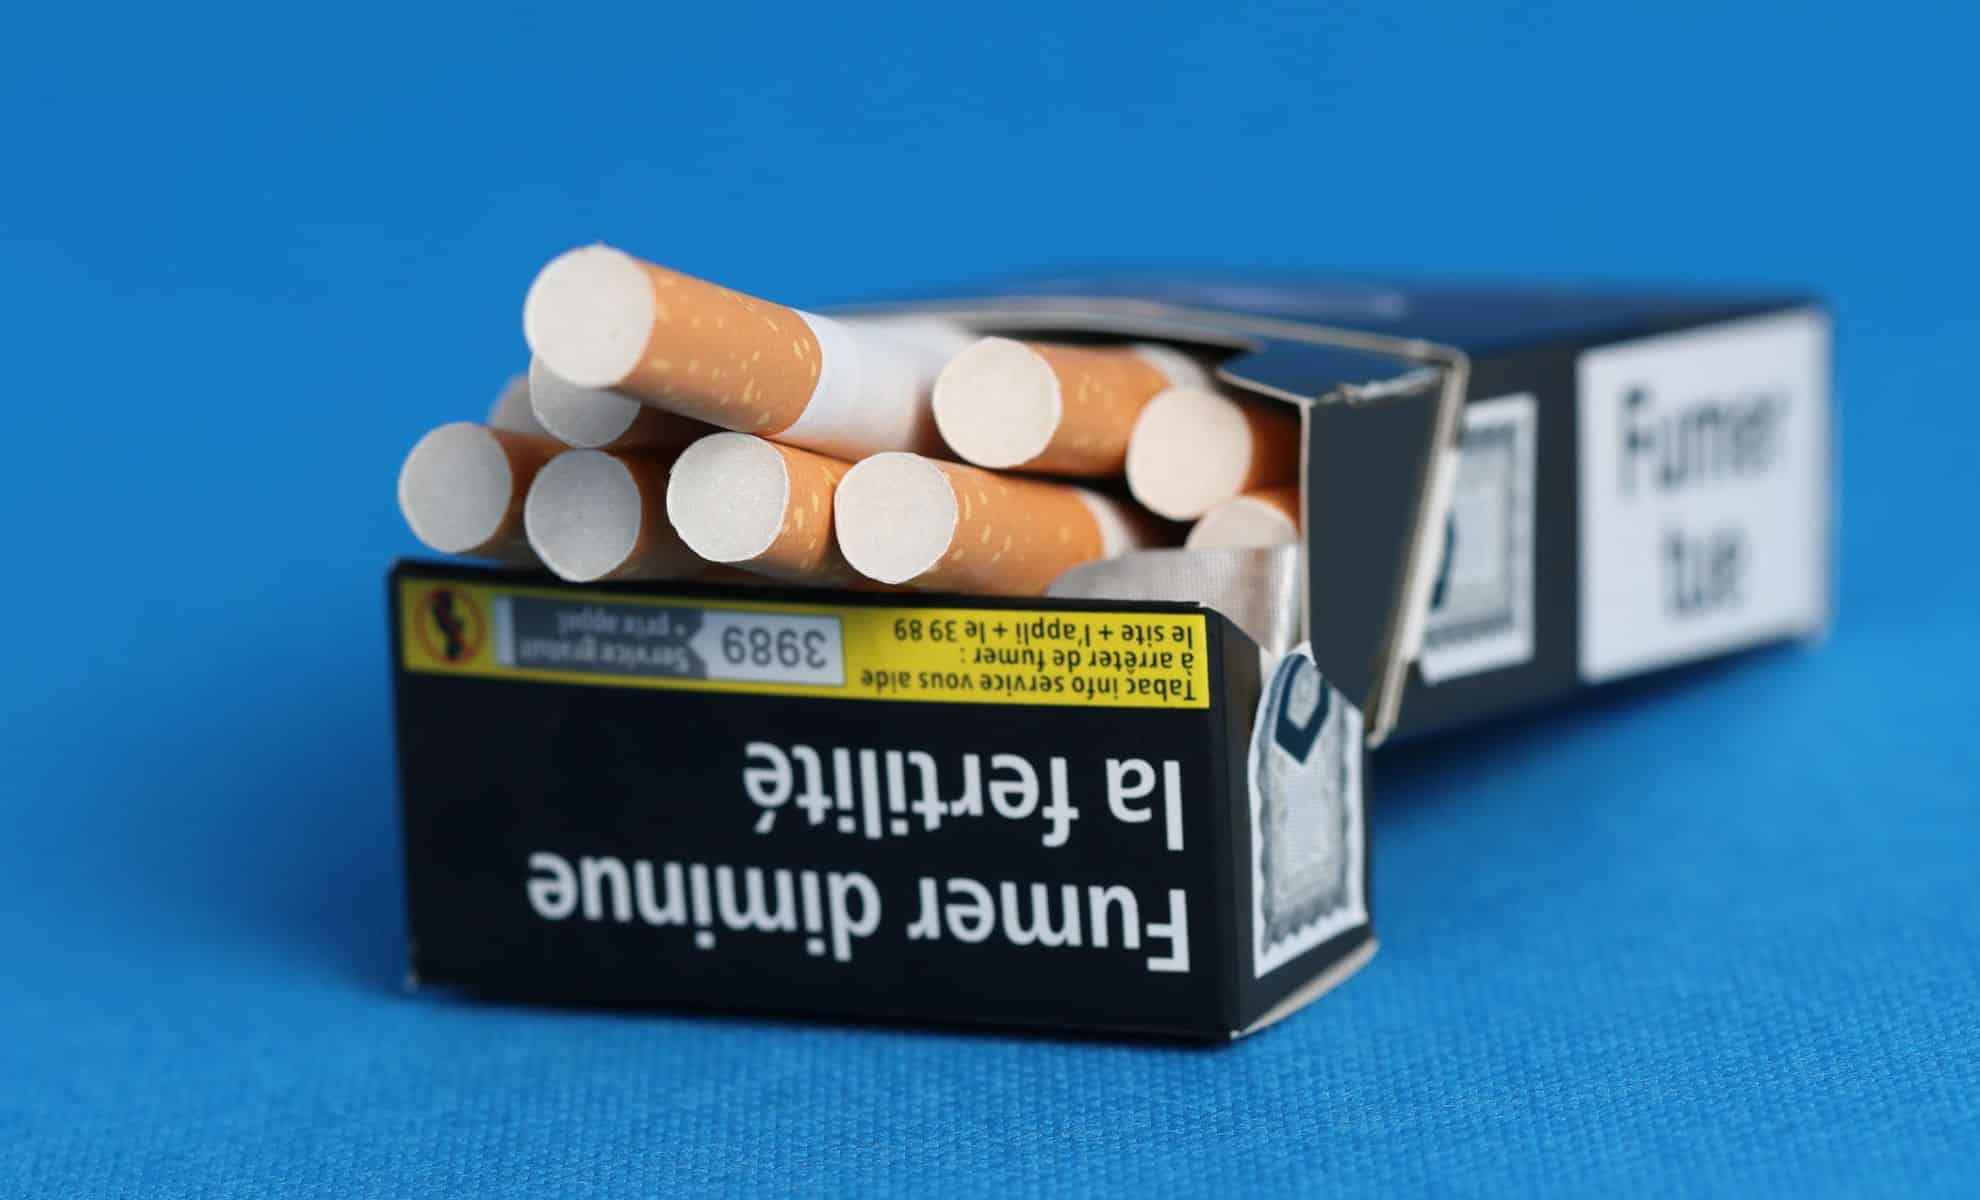 Des frontaliers prennent des risques pour ramener du tabac en France